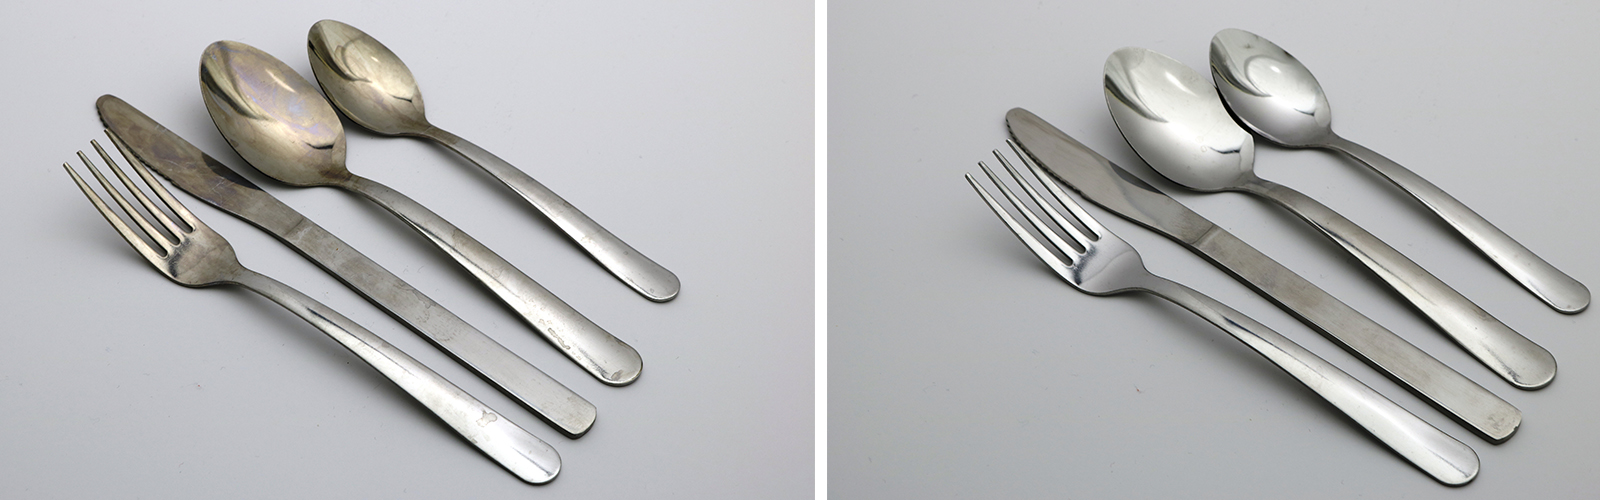 Reward Hospitality | Rusty vs Polished Cutlery